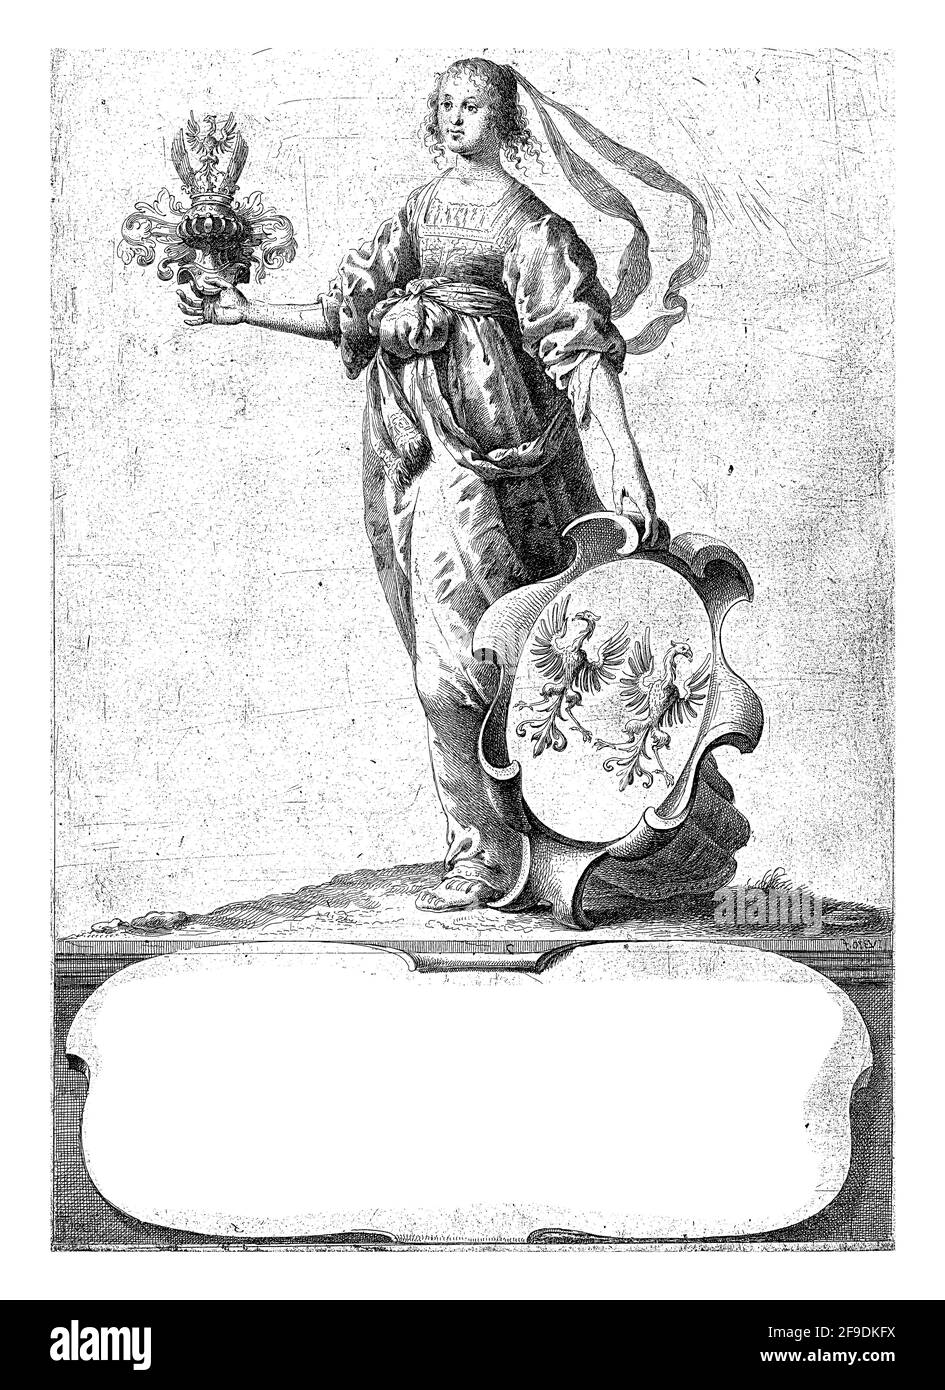 Woman standing with coat of arms with coat of arms of the Van Parijs van Zuidoort family and decorated helmet. Stock Photo